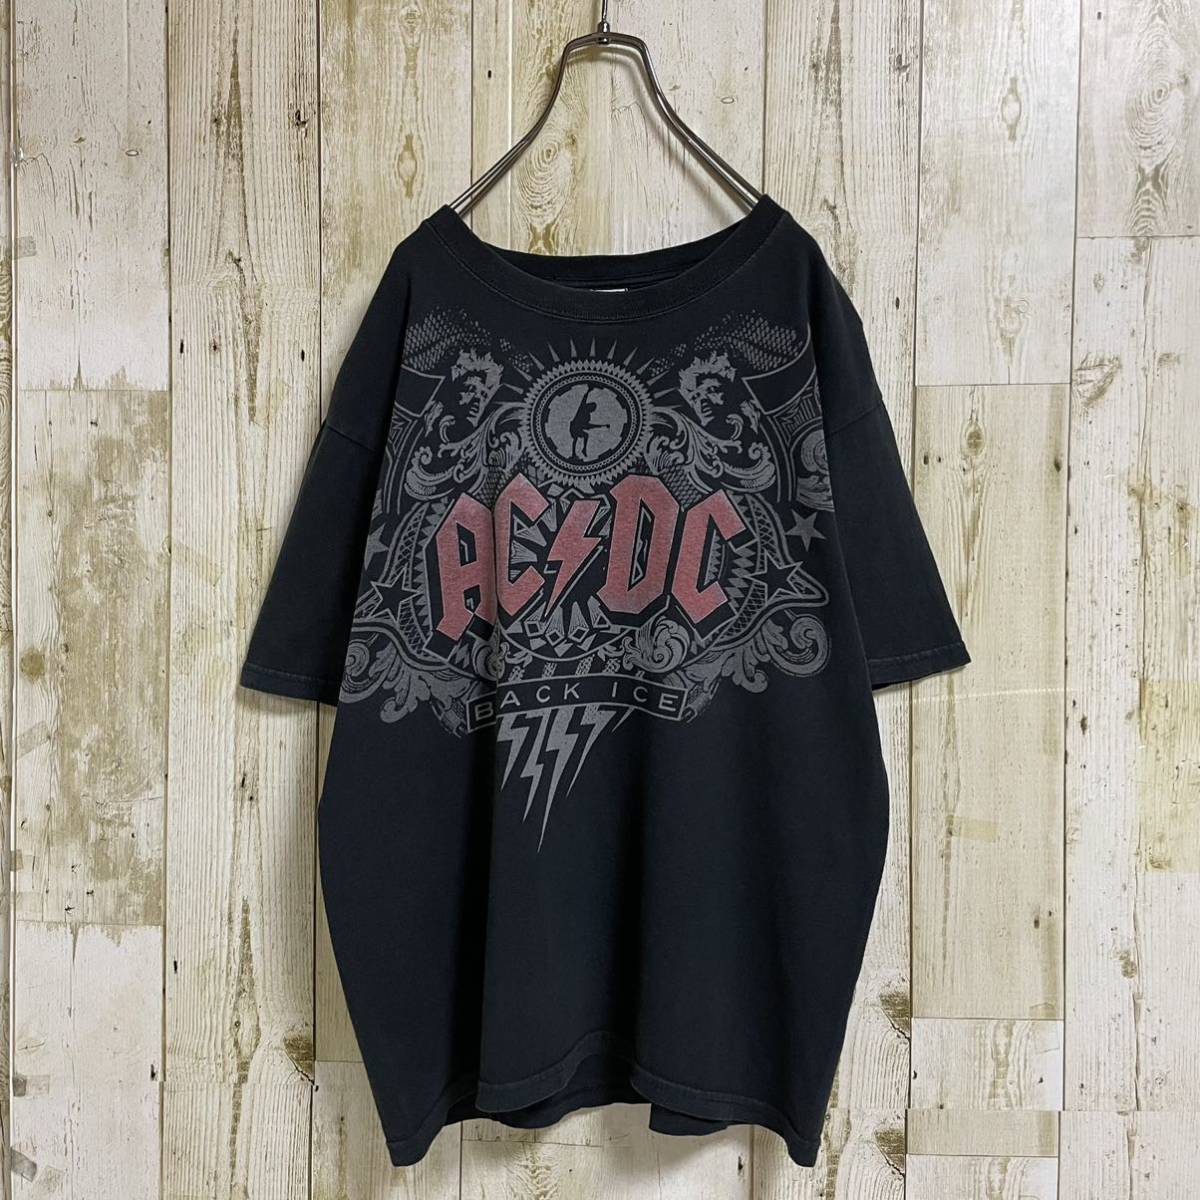 AC/DC ブラックアイス 悪魔の氷 ビッグプリント コピーライト 正規品 バンドTシャツ ロックTee アンビル製ボディ Lサイズ相当 古着